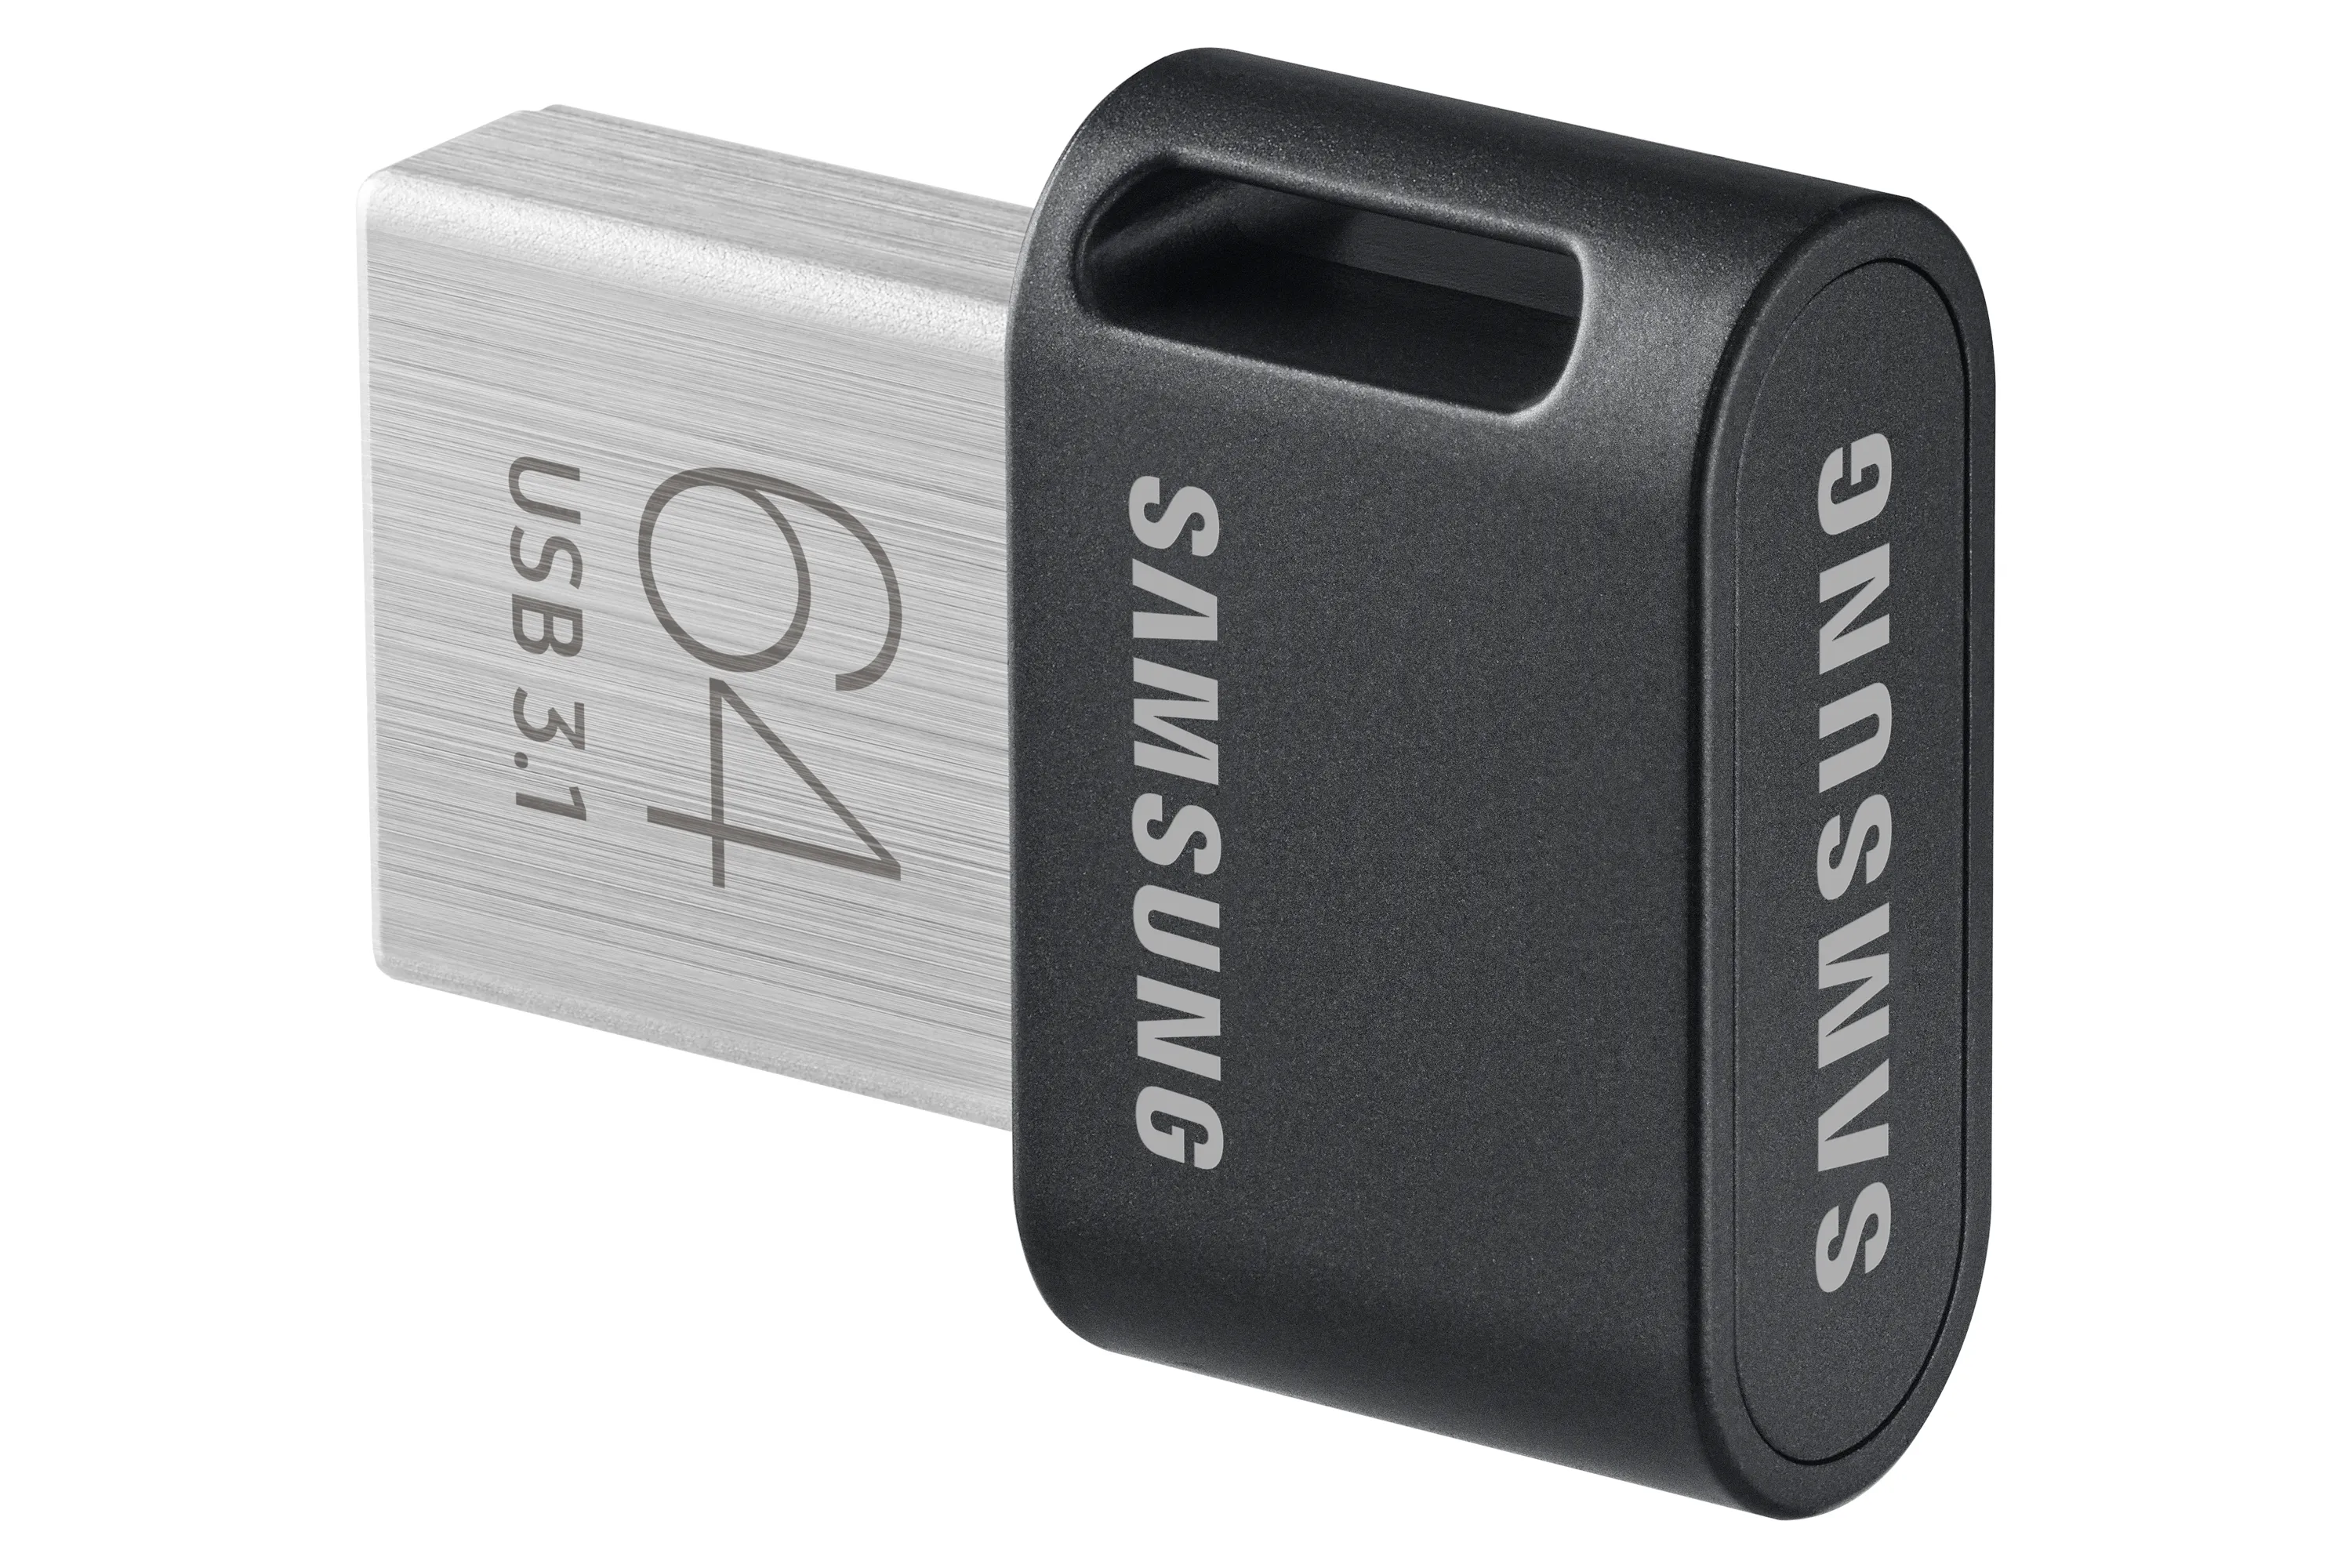 Vente SAMSUNG FIT PLUS 64Go USB 3.1 Samsung au meilleur prix - visuel 10